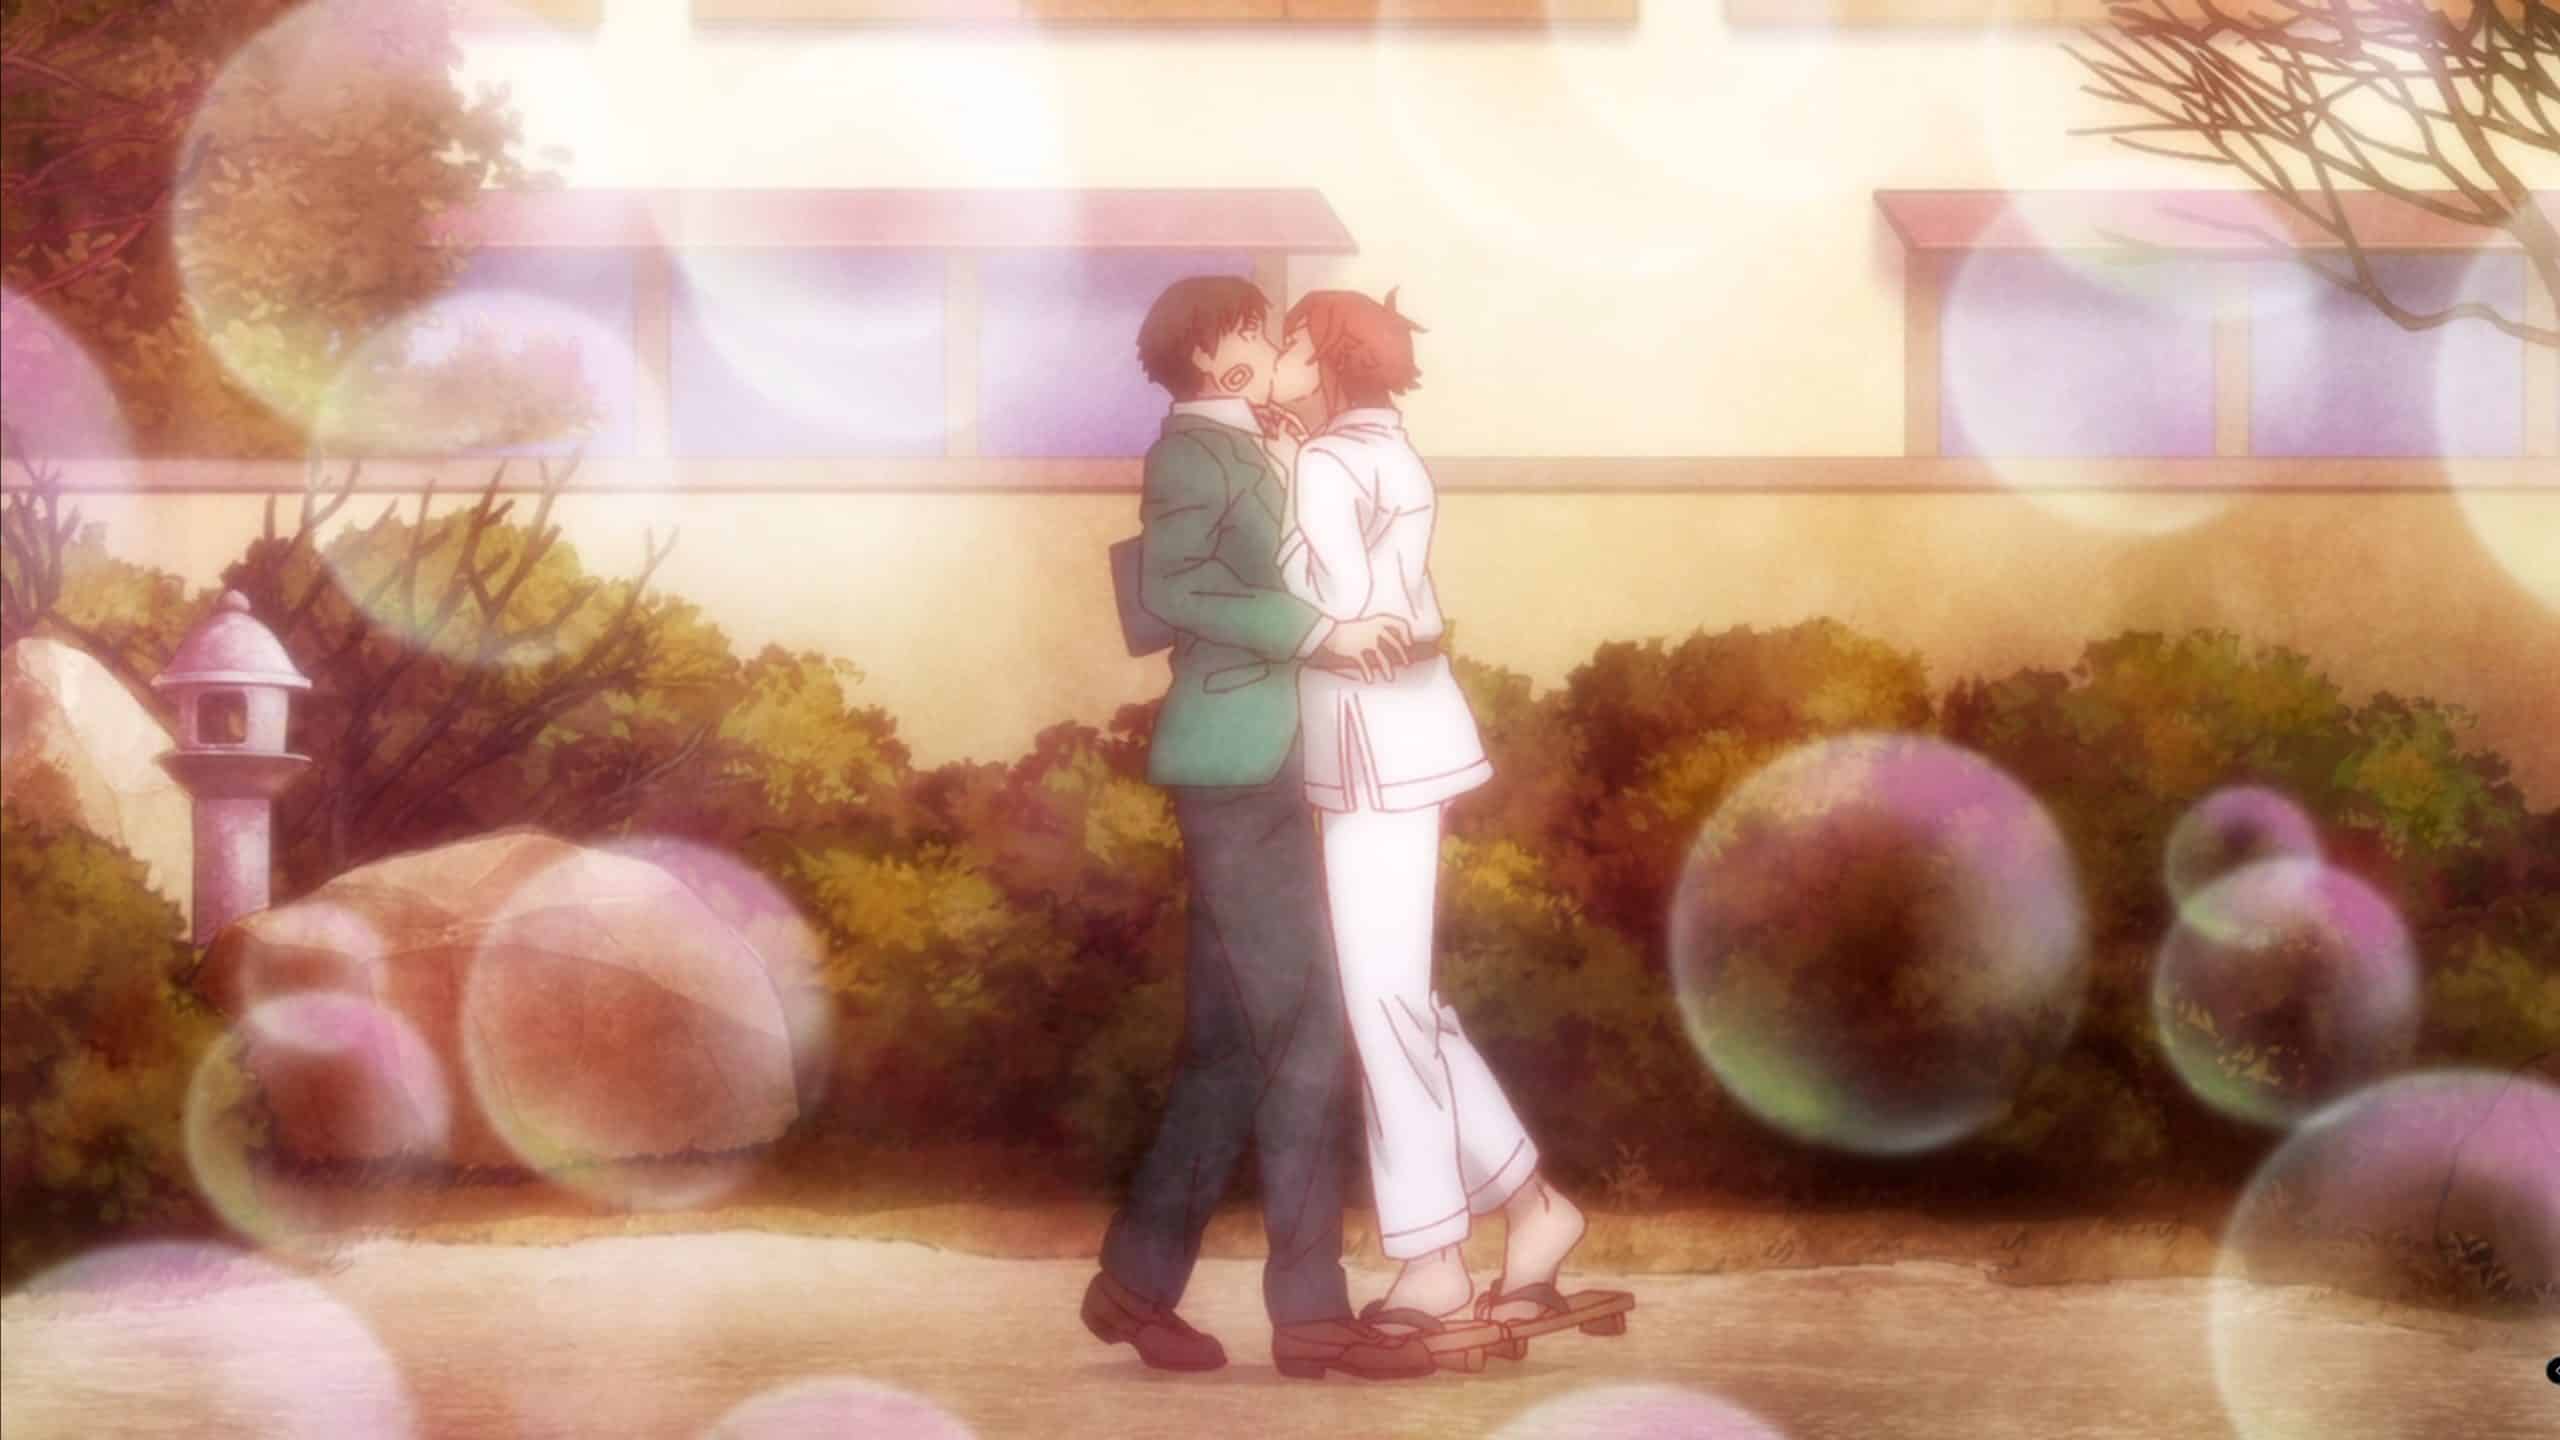 Tomo (Rie Takashashi) and Jun (Kaito Ishikawa) kissing